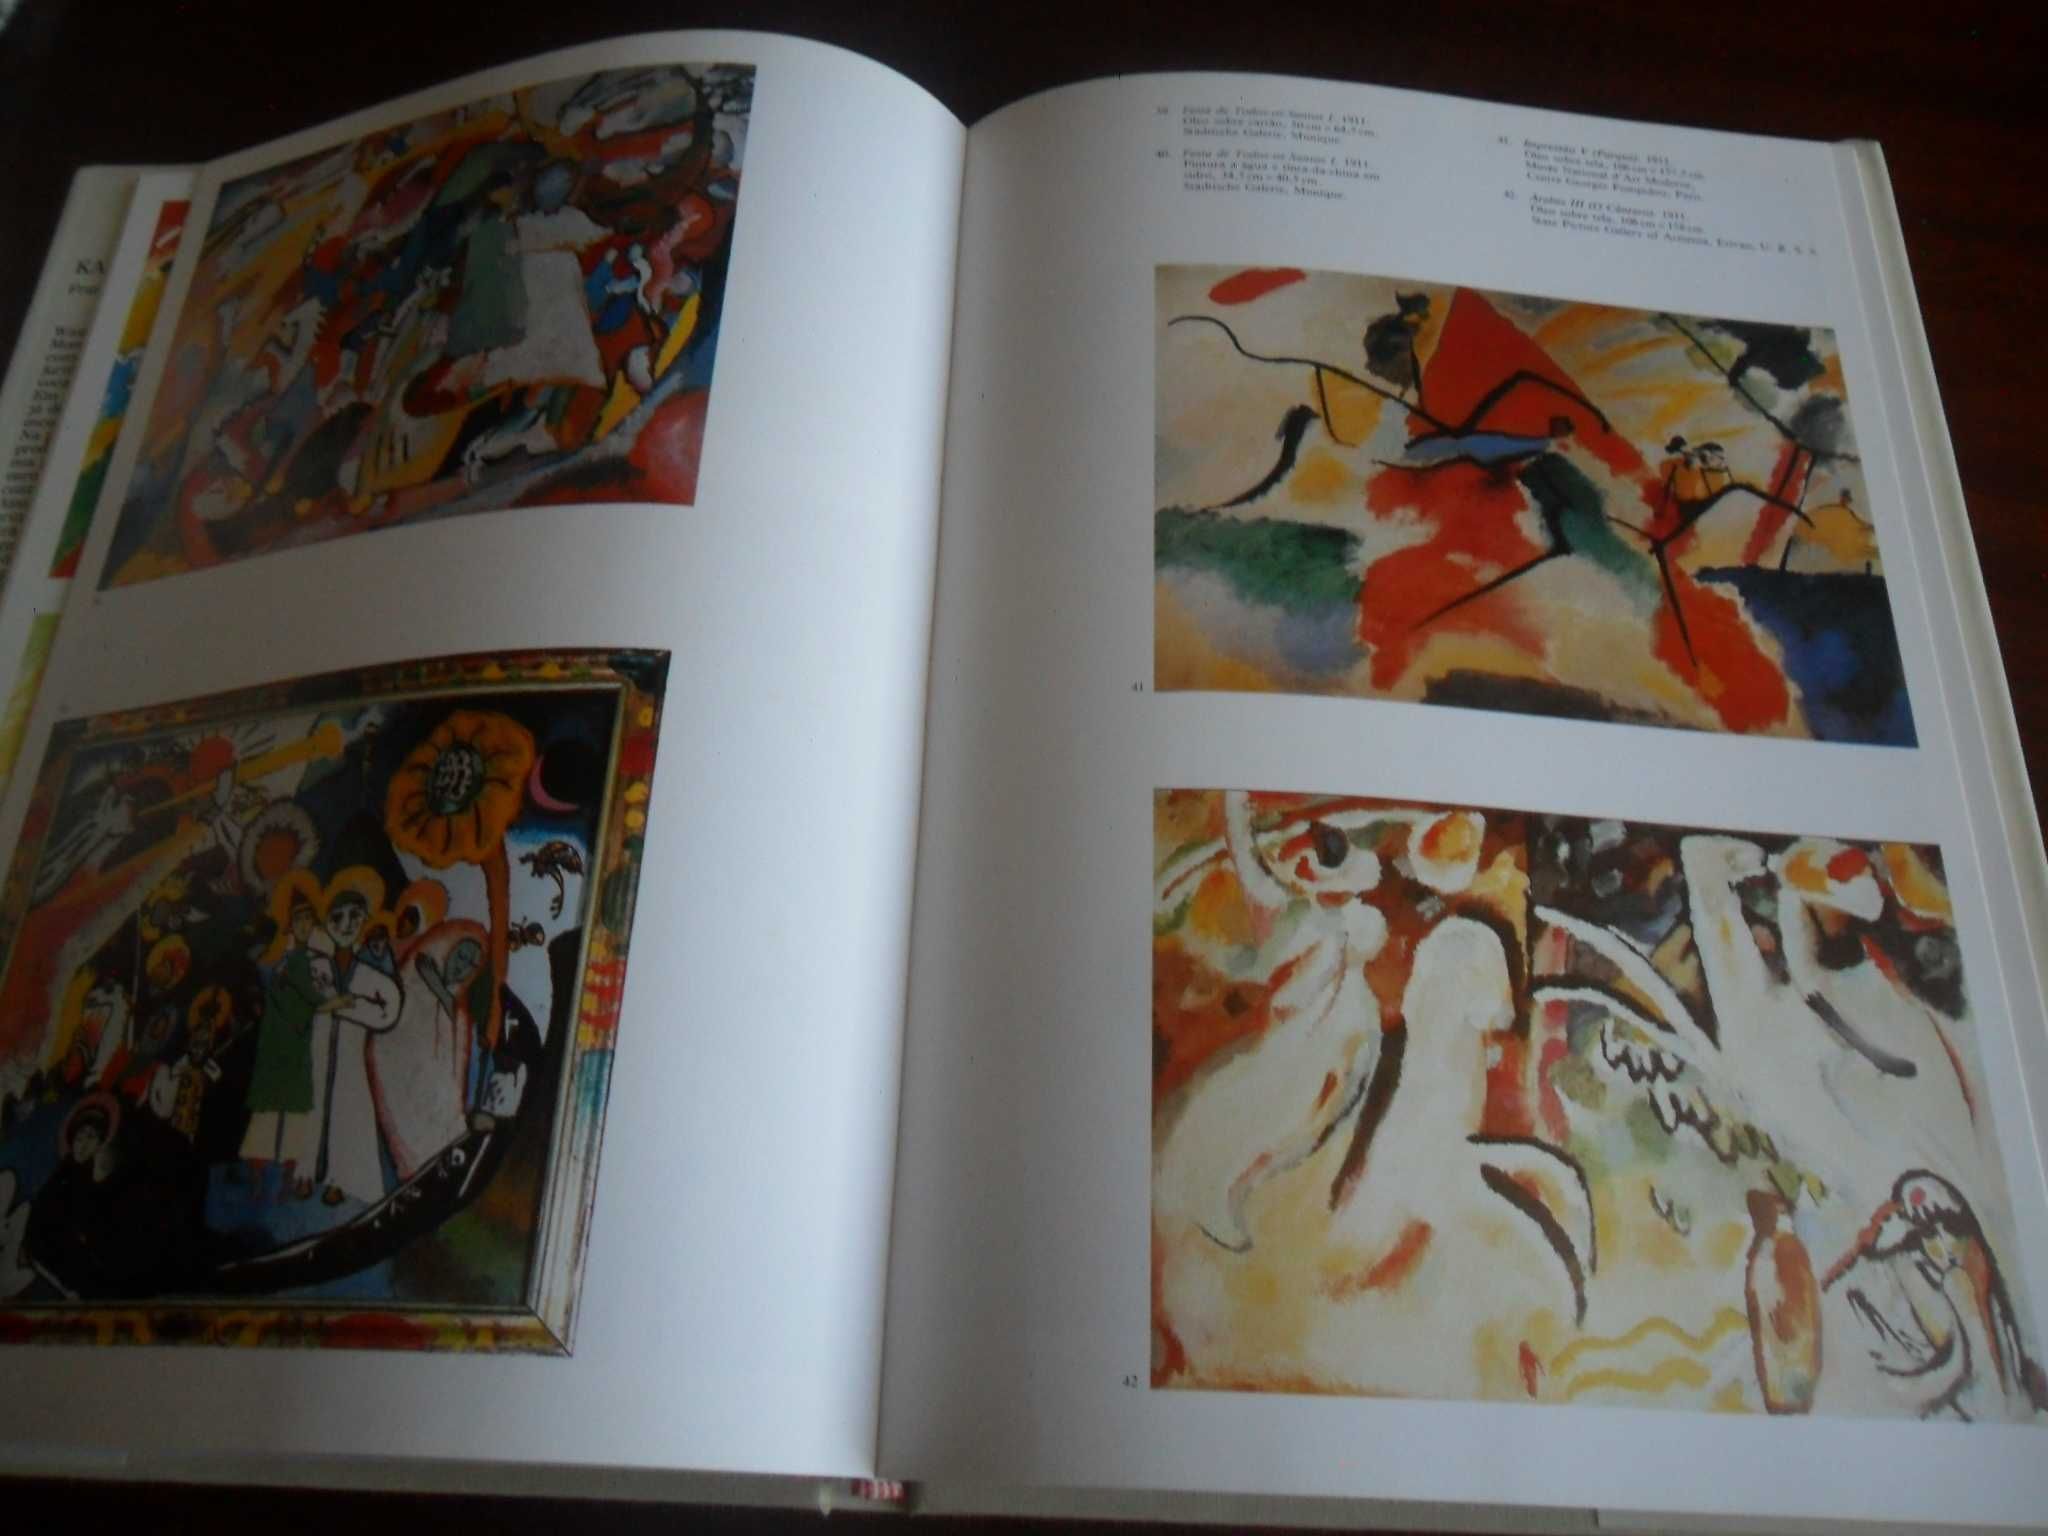 "Kandinsky" de François Le Targat - 1ª Edição de 1986